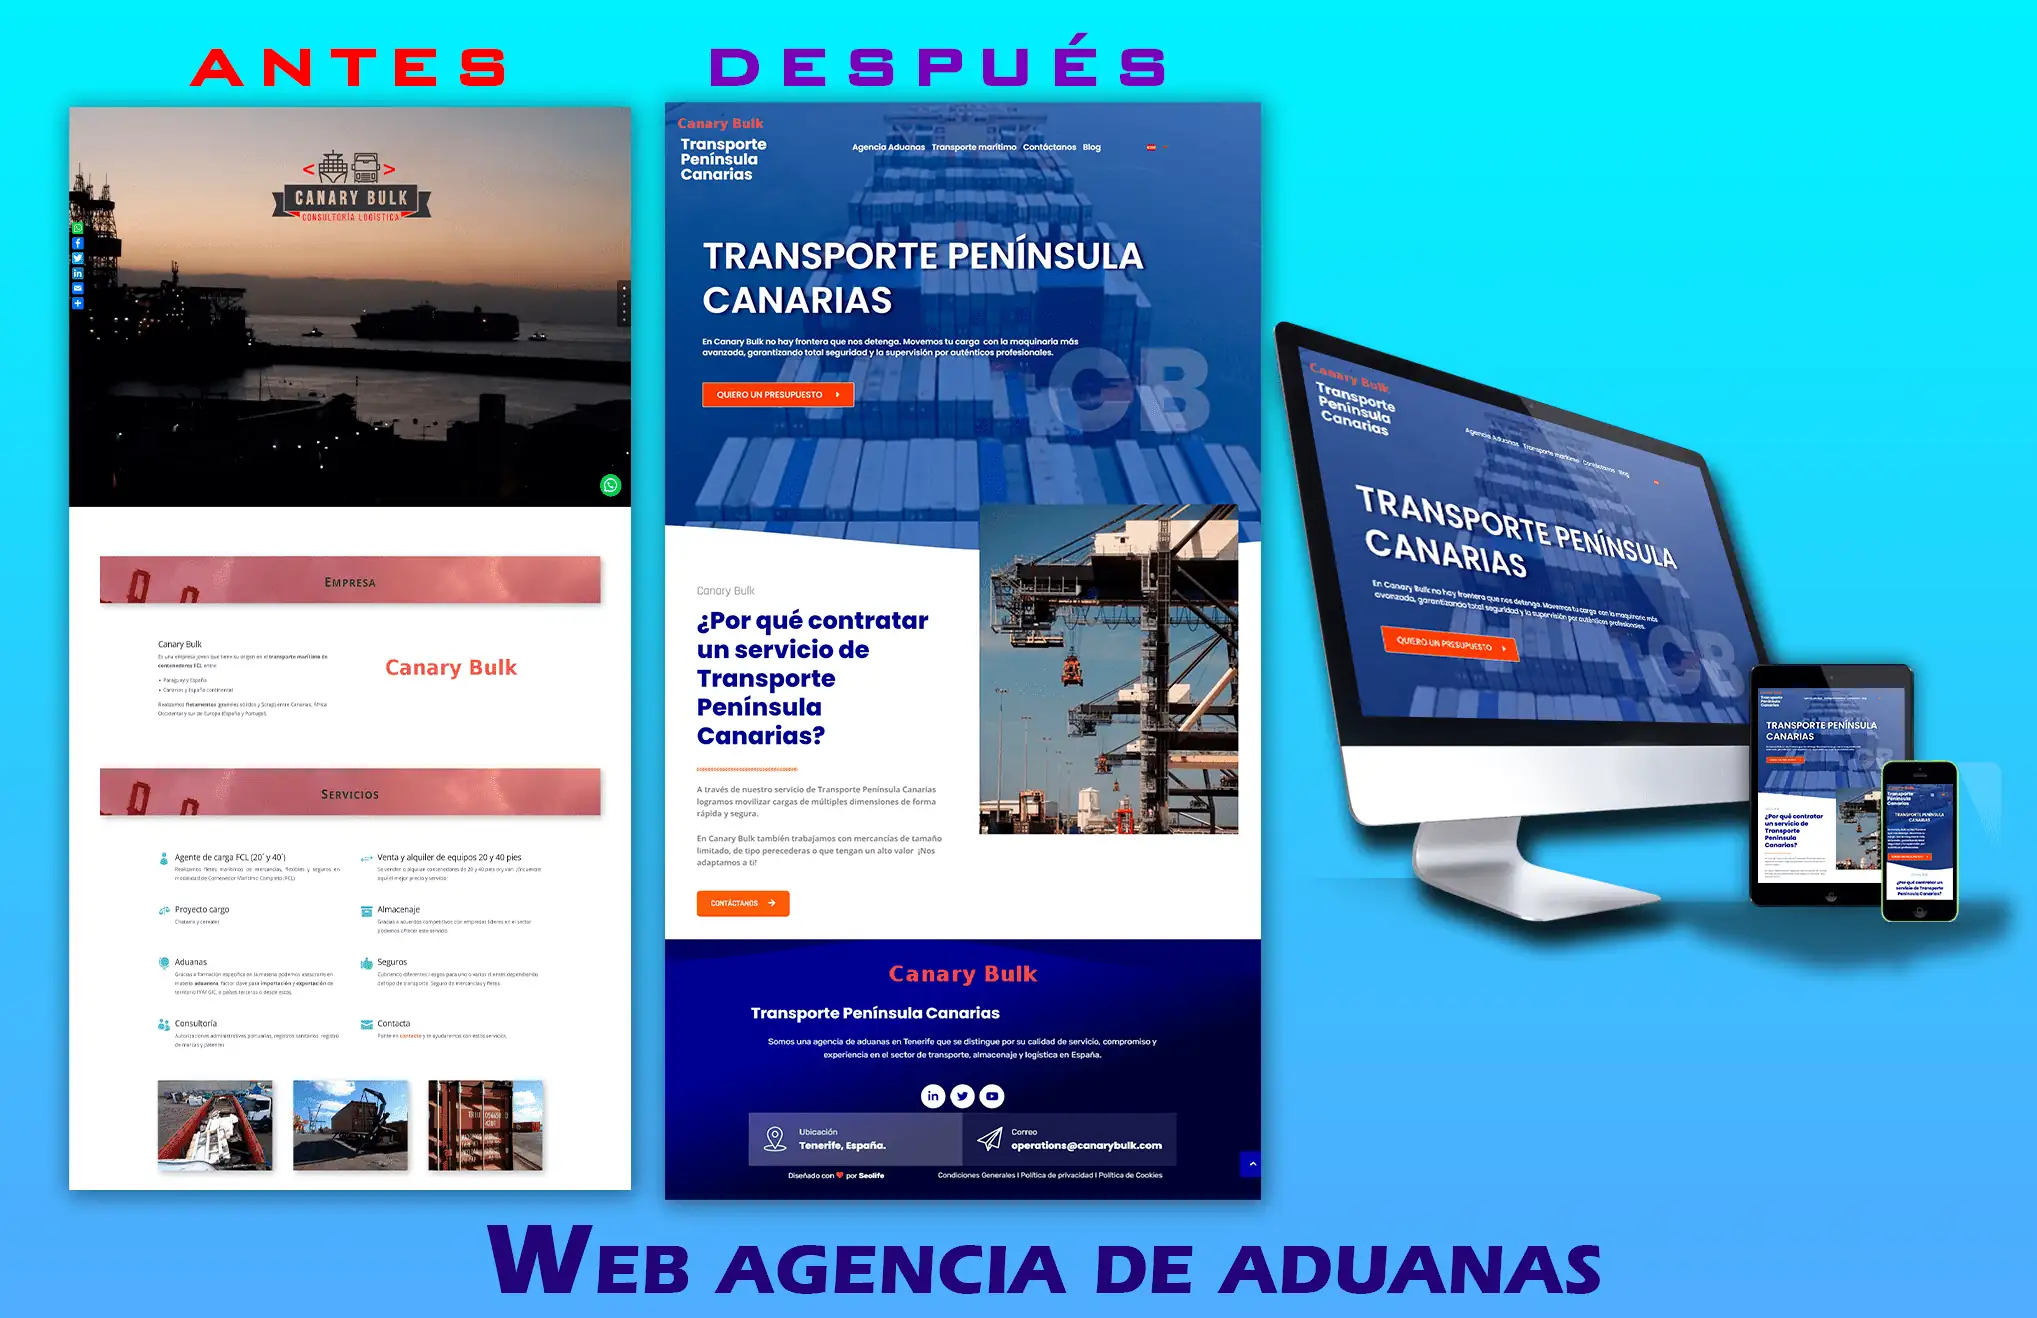 Web agencia de aduanas